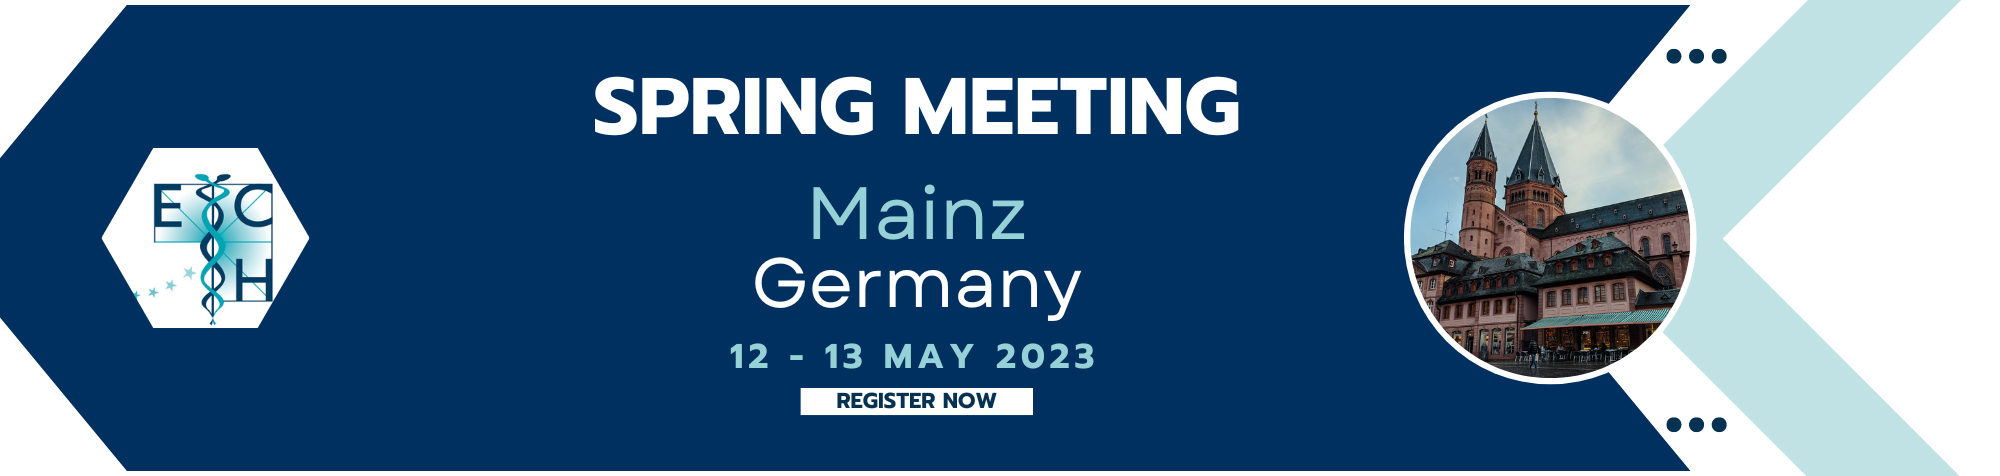 ECH Spring Meeting - Mainz